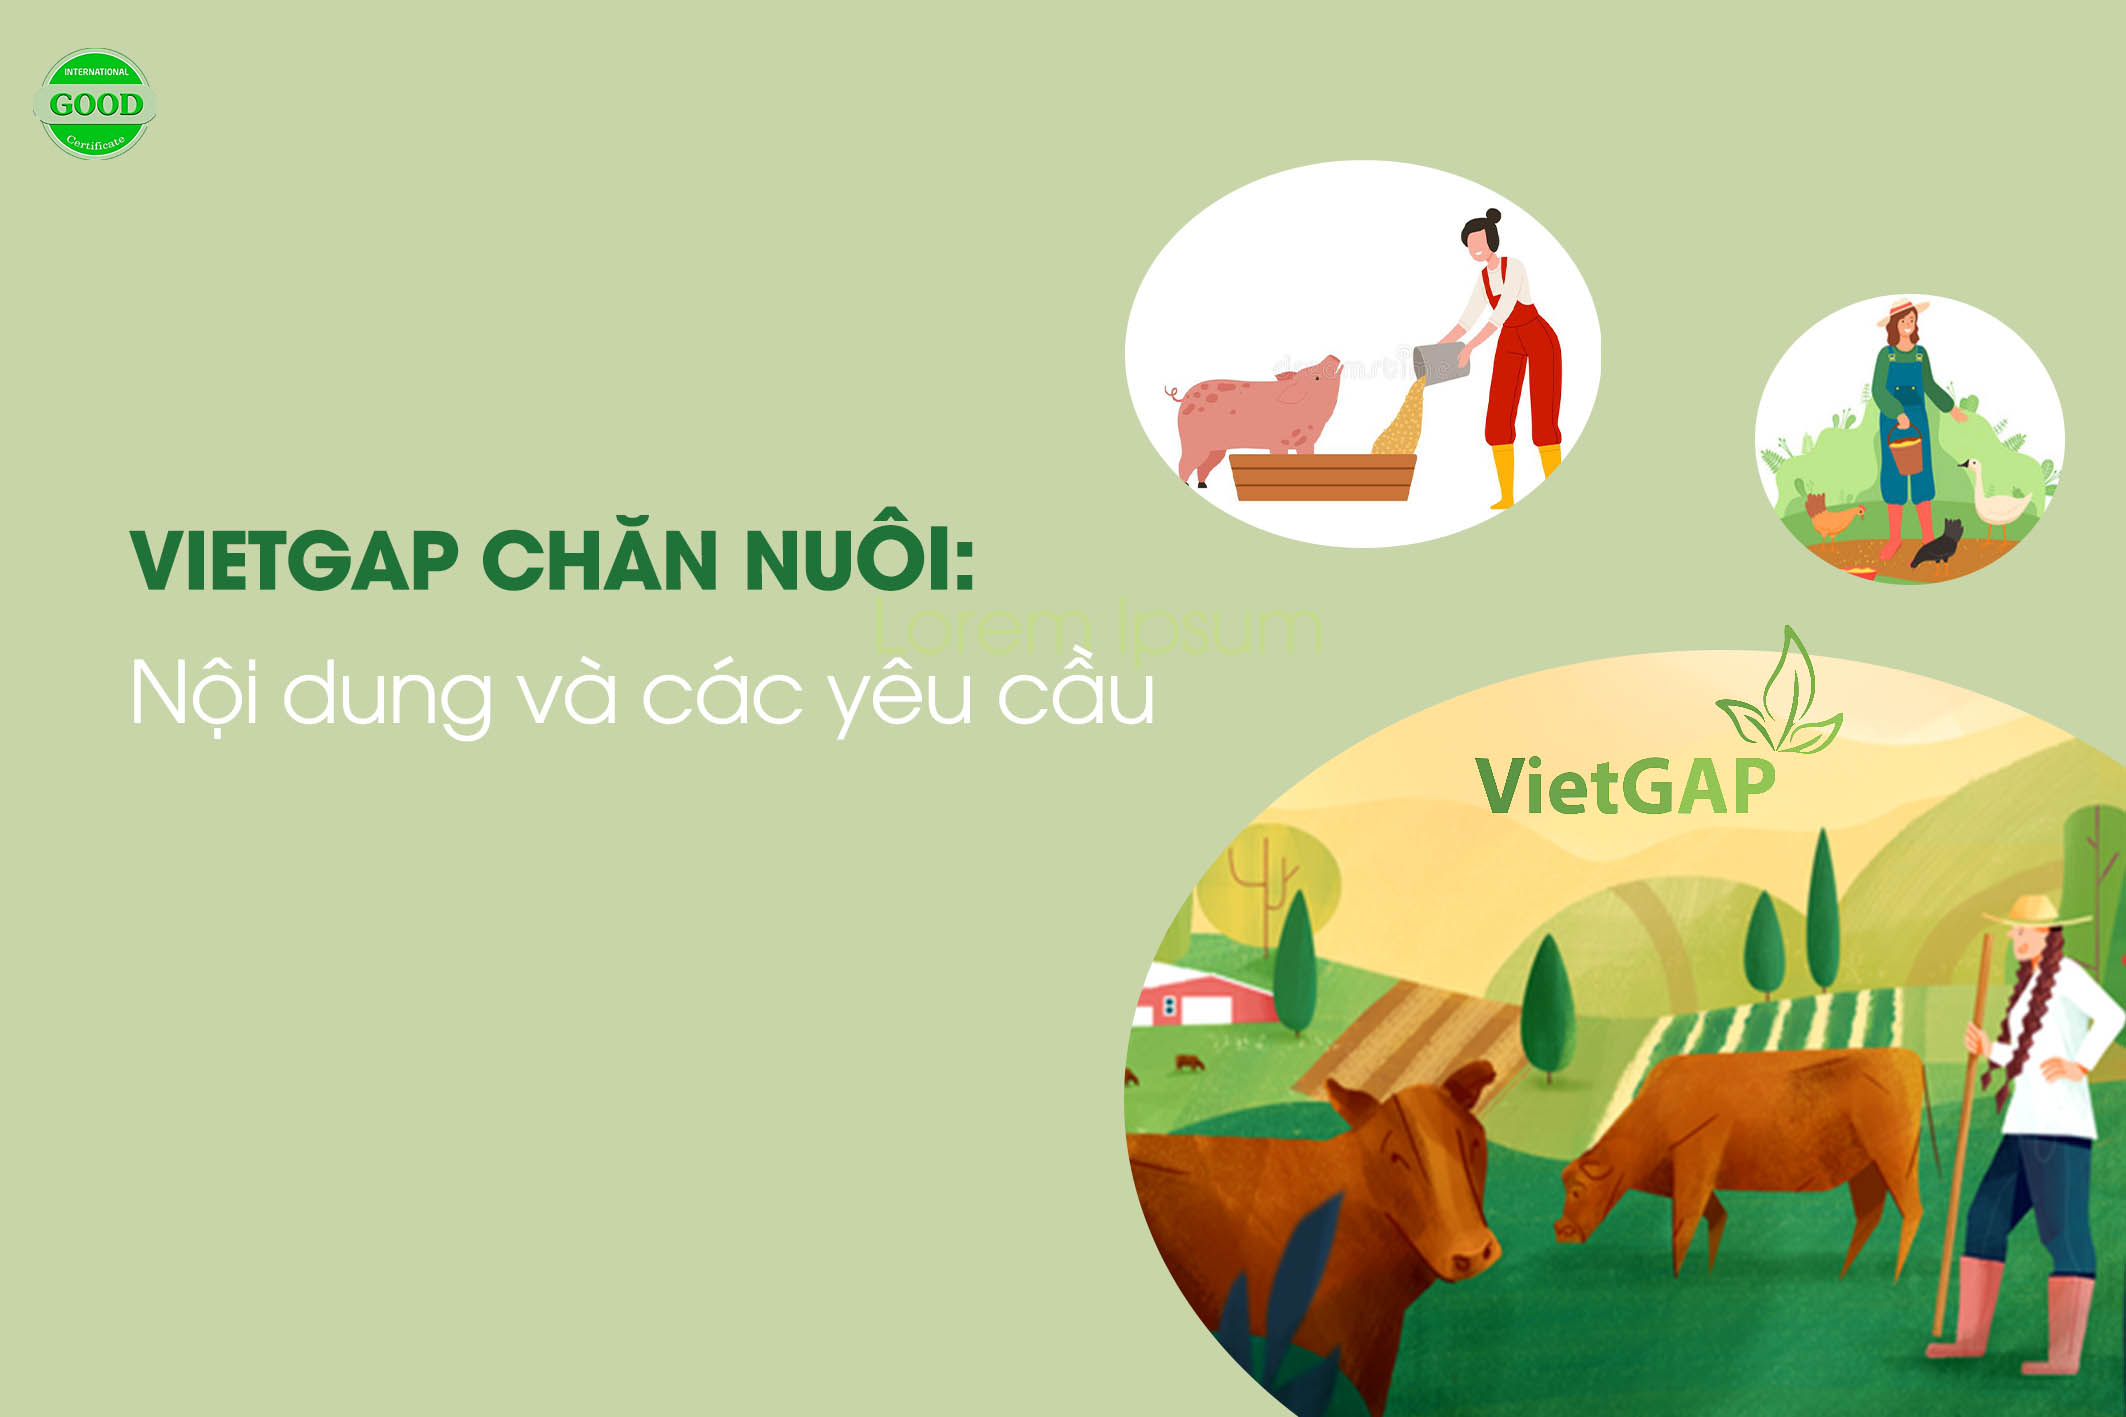 VietGAP chăn nuôi: Yêu cầu khi áp dụng sản xuất theo tiêu chuẩn